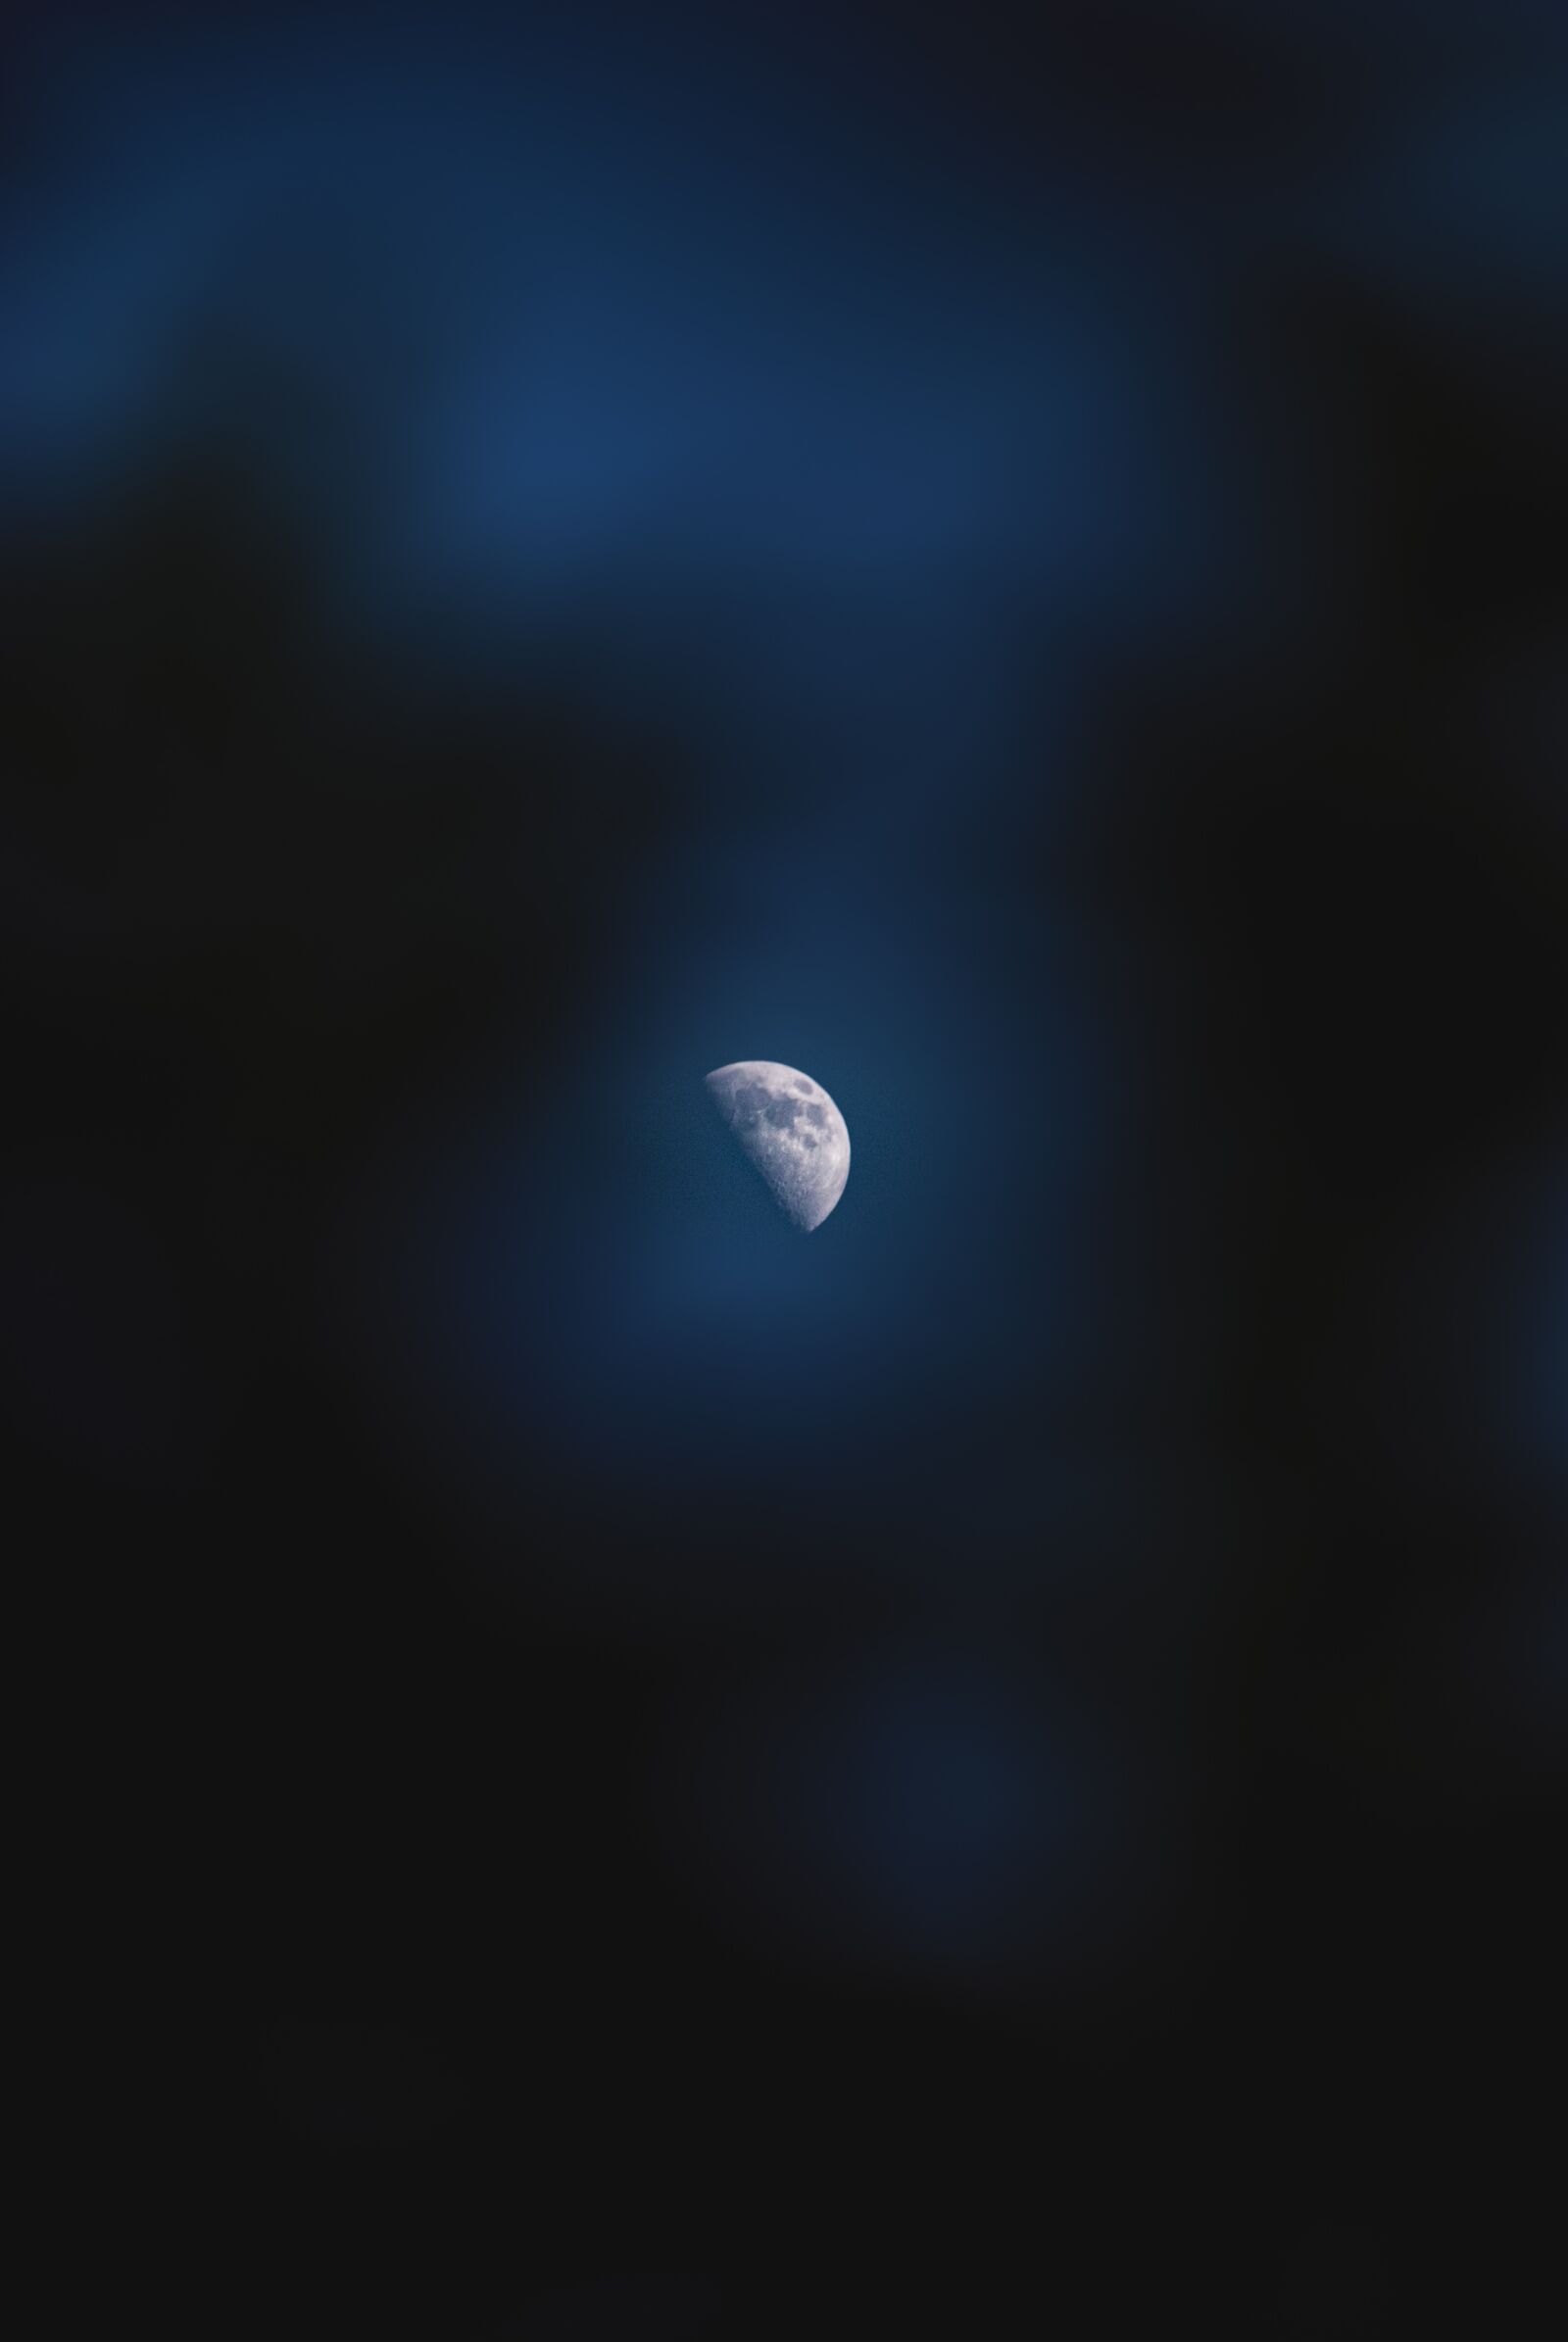 Tamron 18-200mm F3.5-6.3 Di II VC sample photo. Moon, night, sky photography